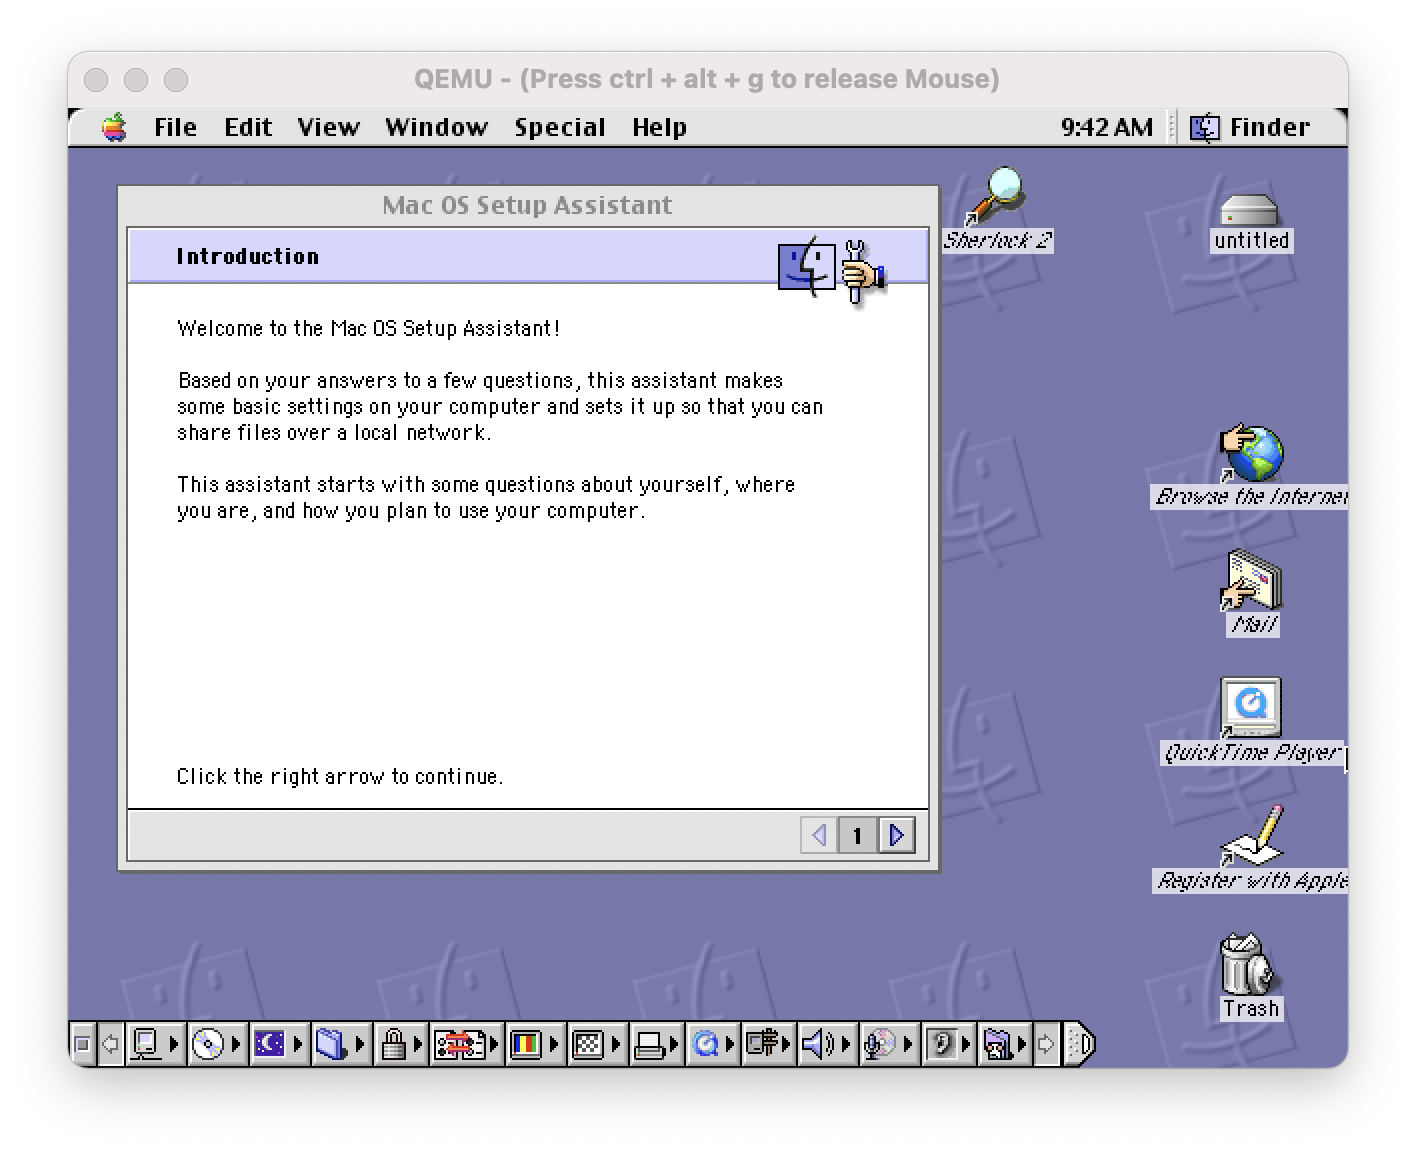 mac os 9 terminal emulator